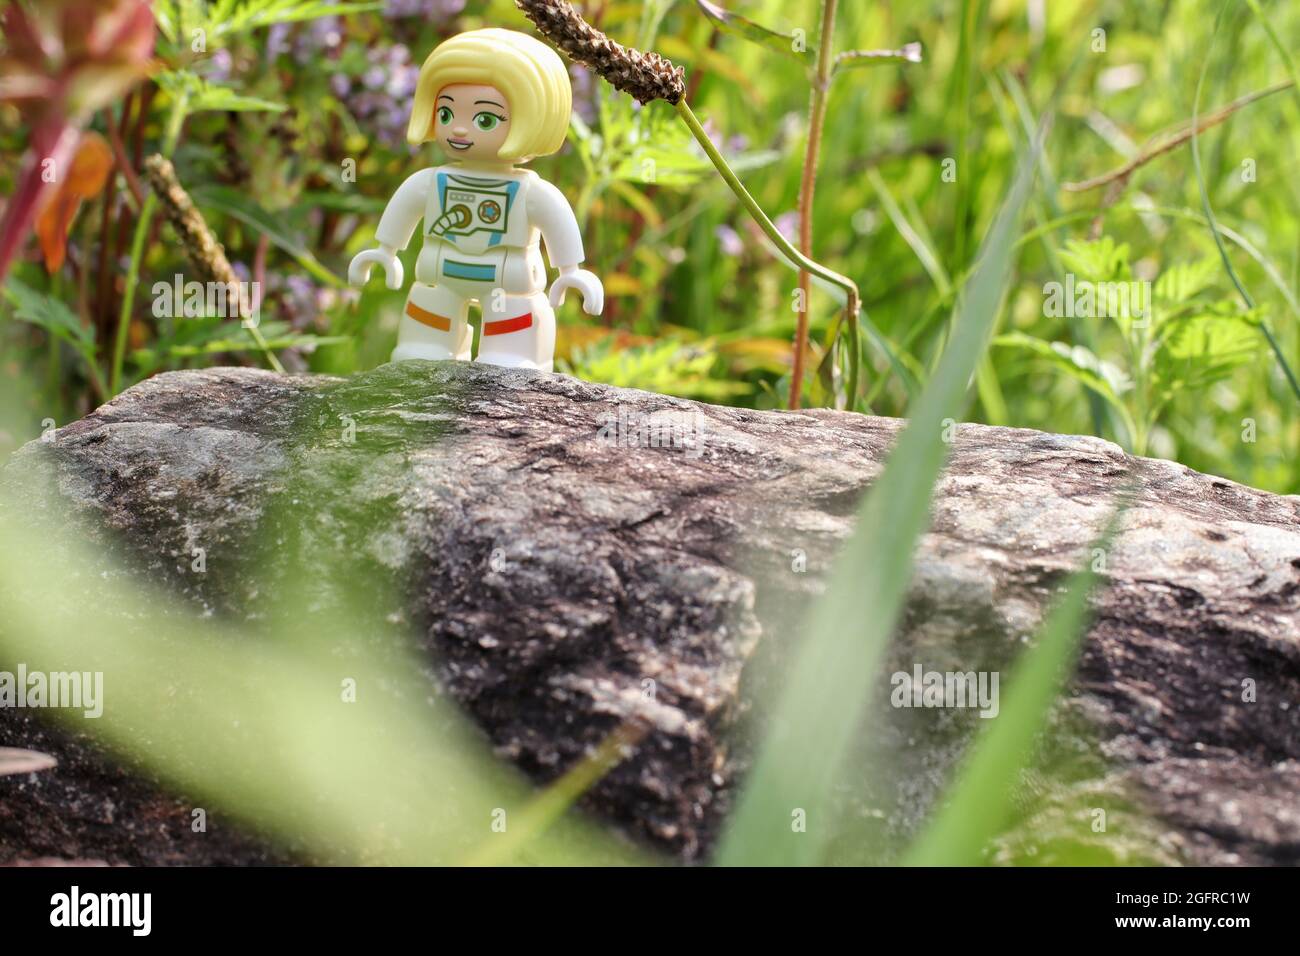 GREENVILLE, STATI UNITI - 31 luglio 2021: Un primo piano di una figura di astronauta giocattolo Lego sul legno su sfondo verde Foto Stock